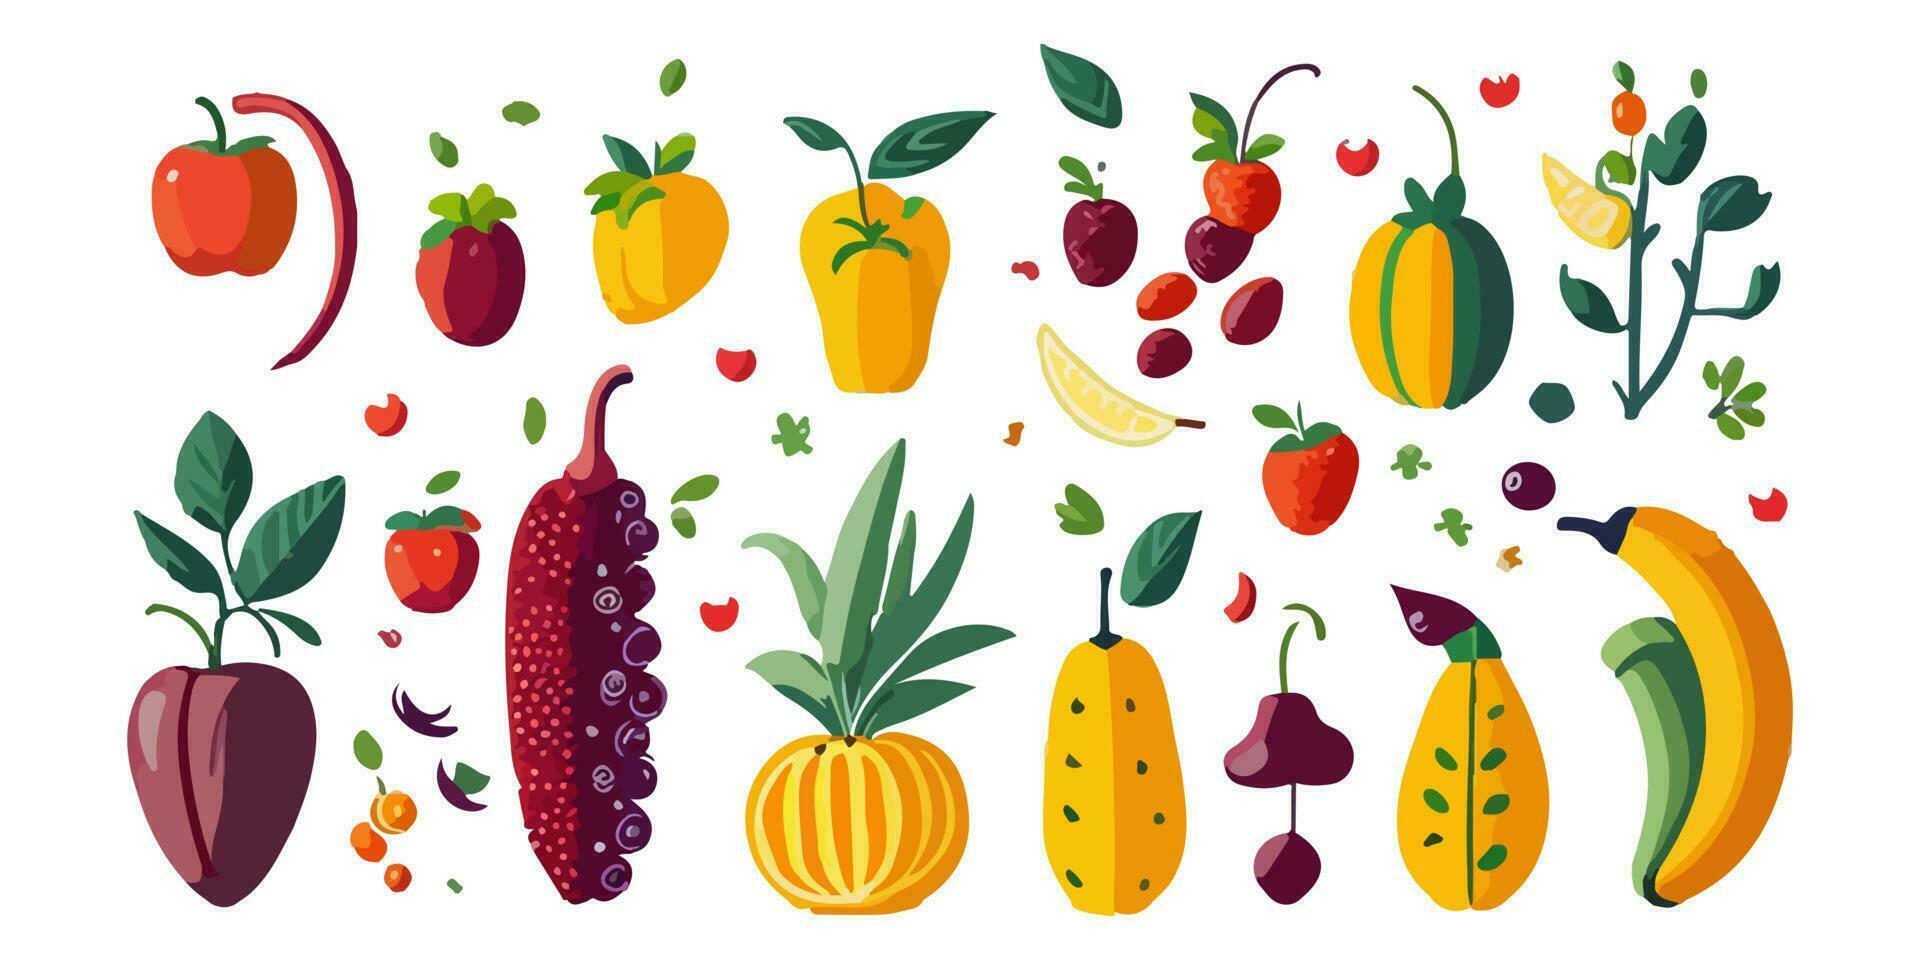 albaricoque, guayaba, pasión fruta, y más, vistoso formación de frutas ilustrado en vector